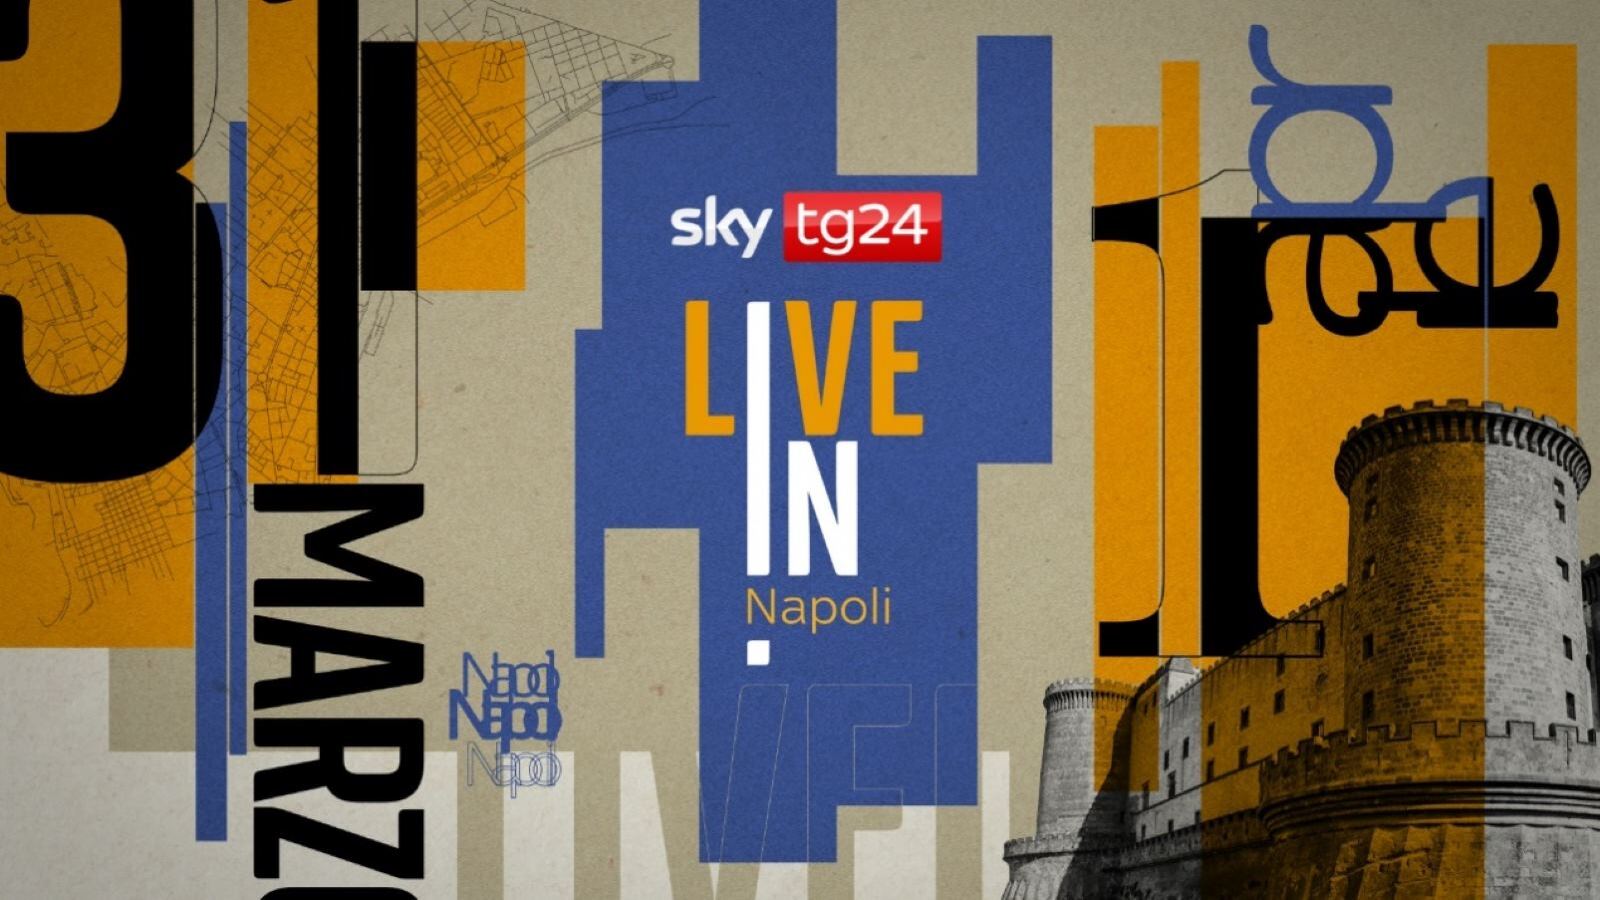 SKY TG24 Live in Napoli: programma, ospiti e location dell'evento in onda oggi e domani